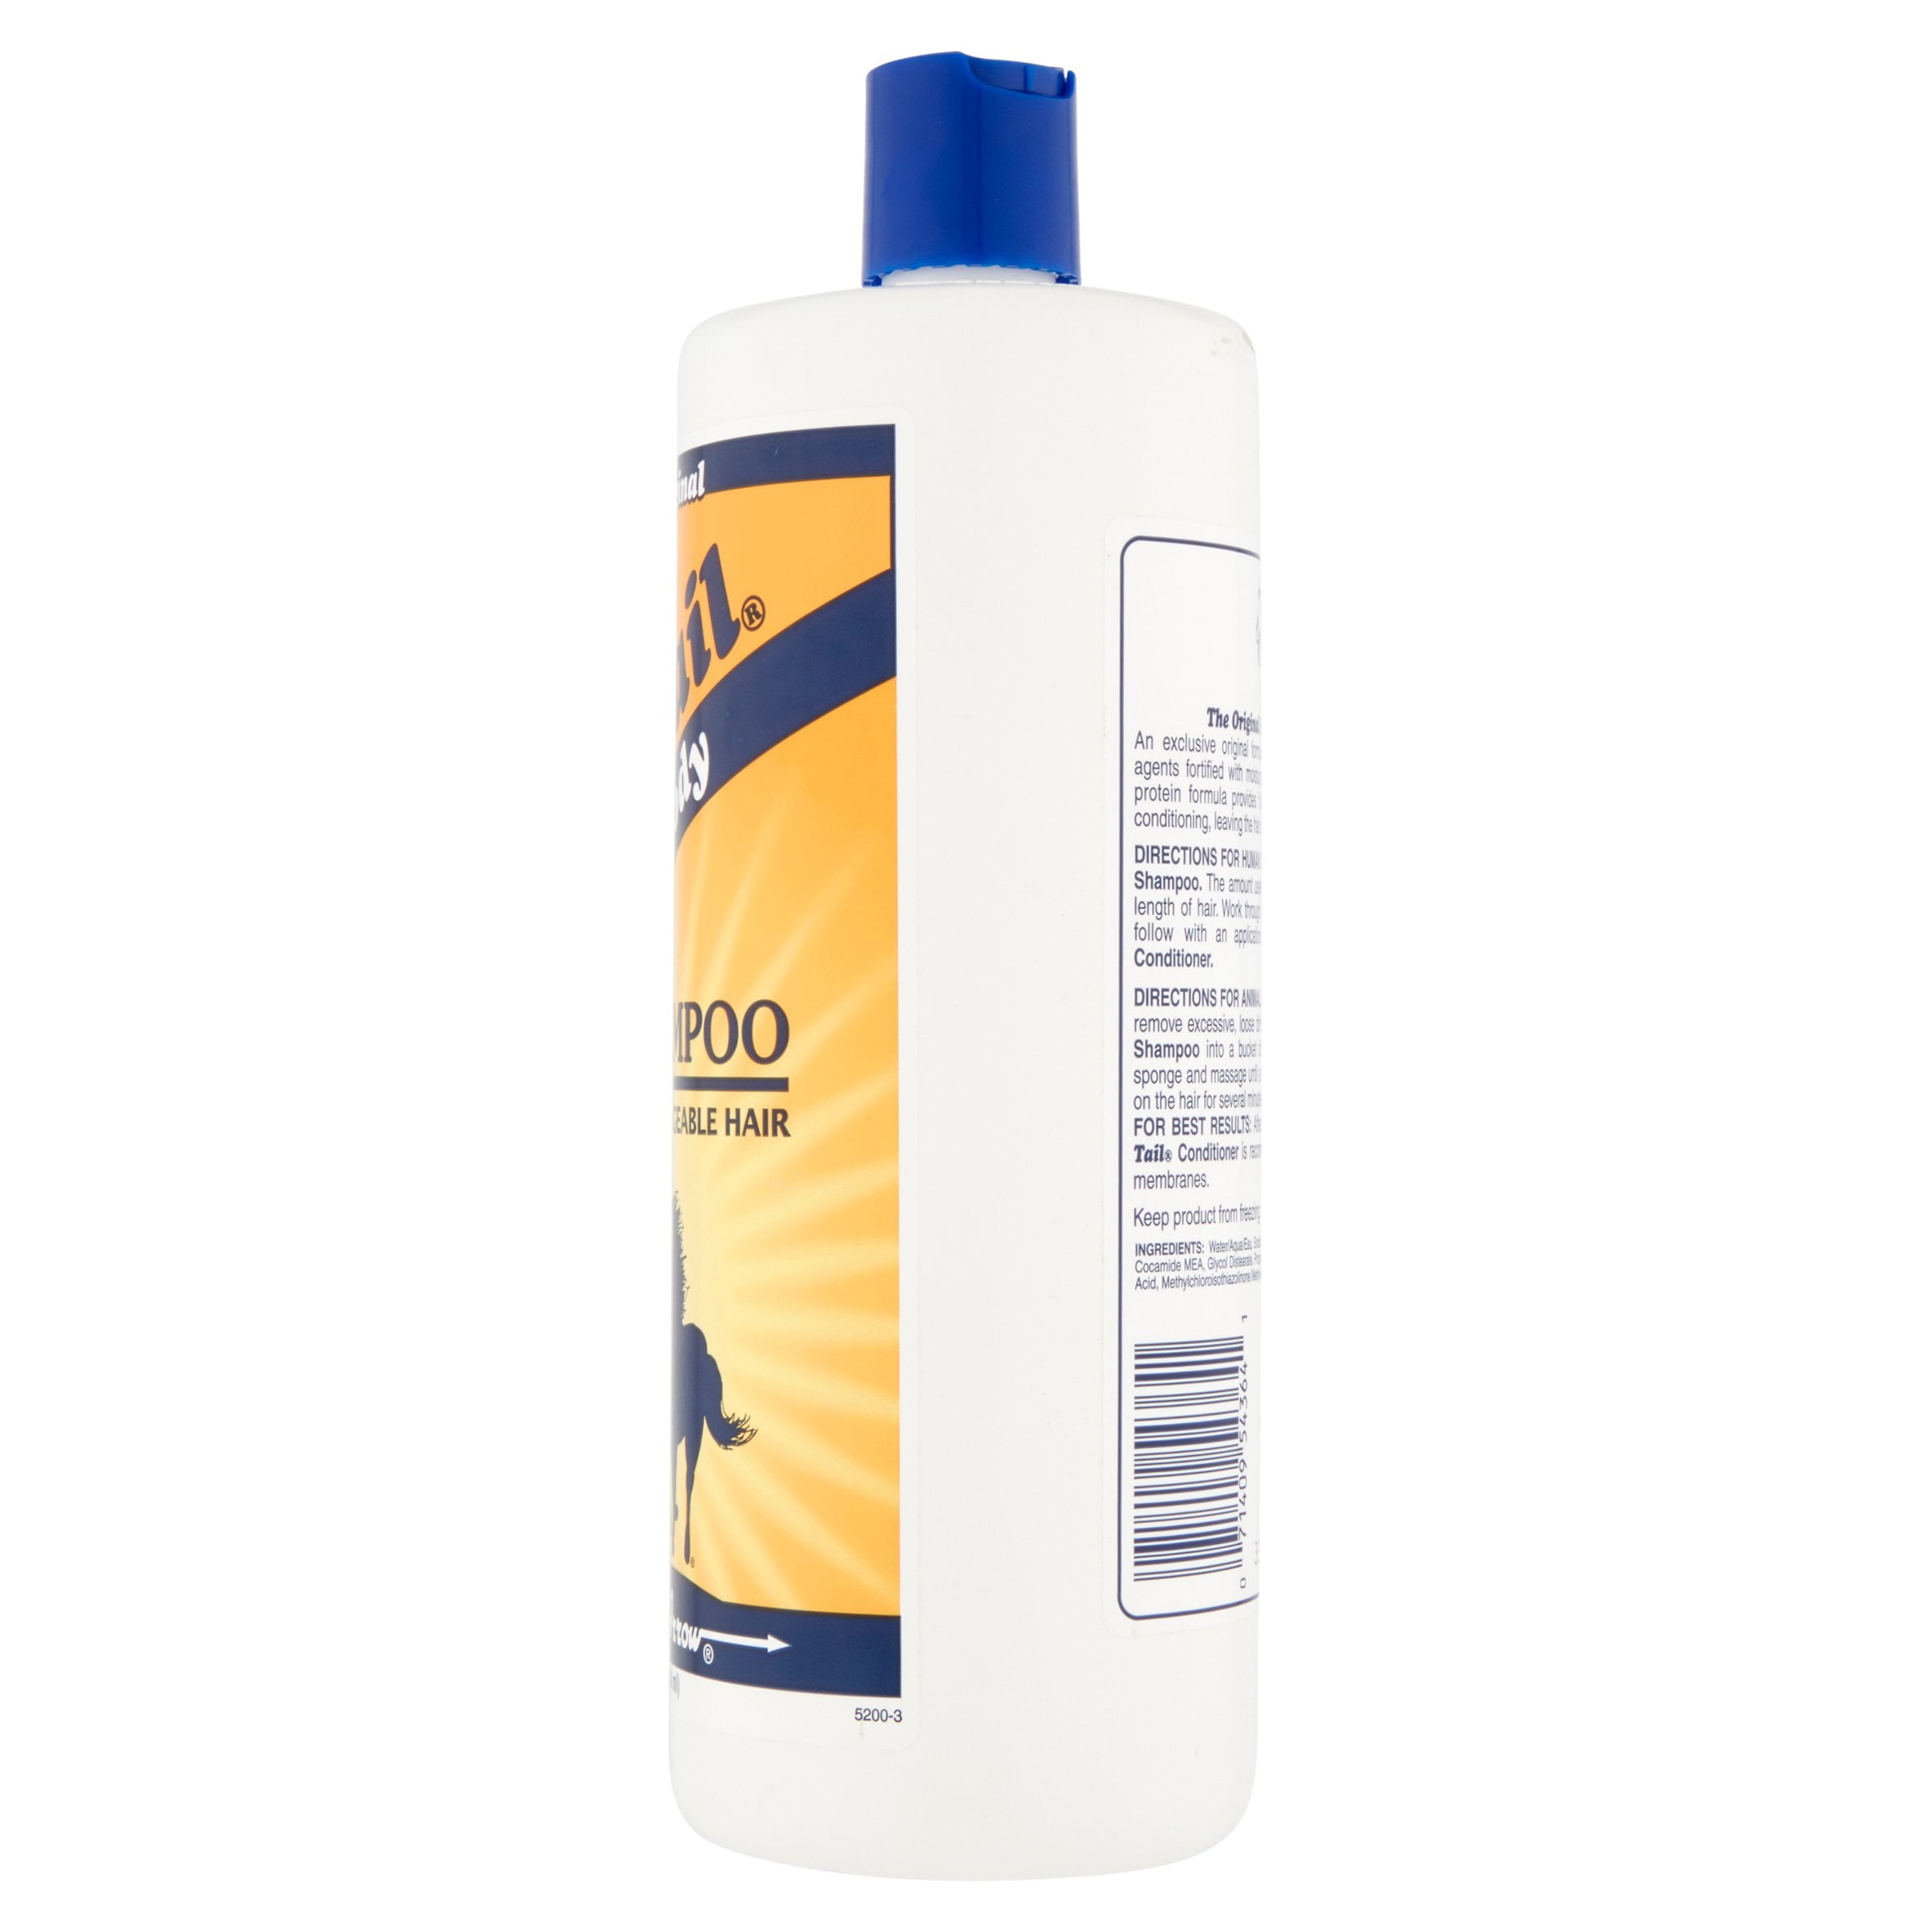 Tail Original Formula Shampoo For Thicker Fuller Hair 32 Oz - Walmart.com